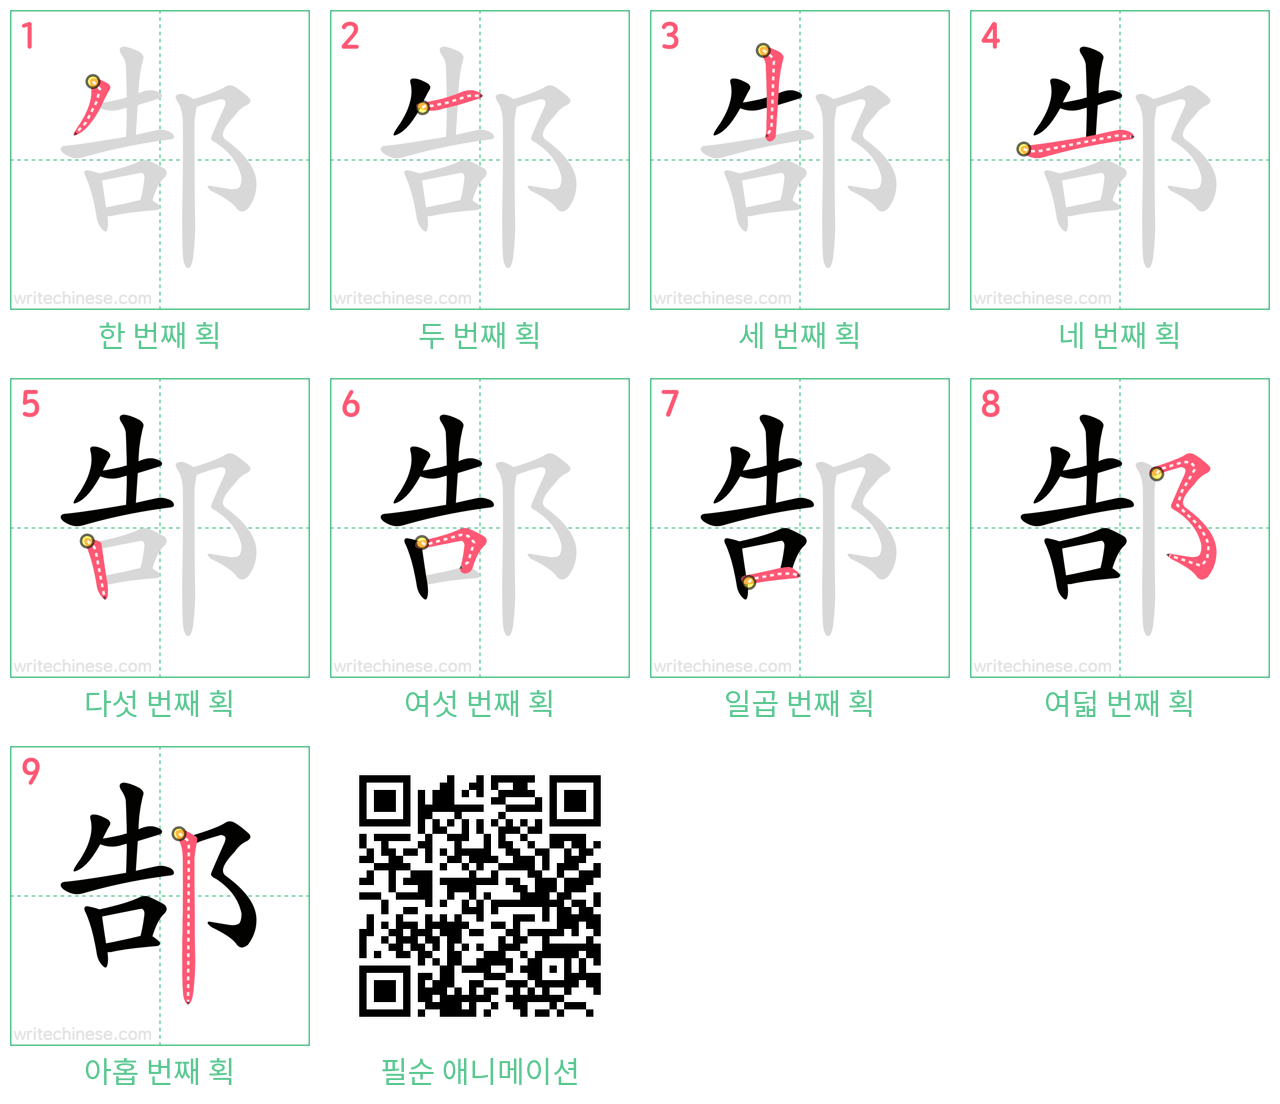 郜 step-by-step stroke order diagrams